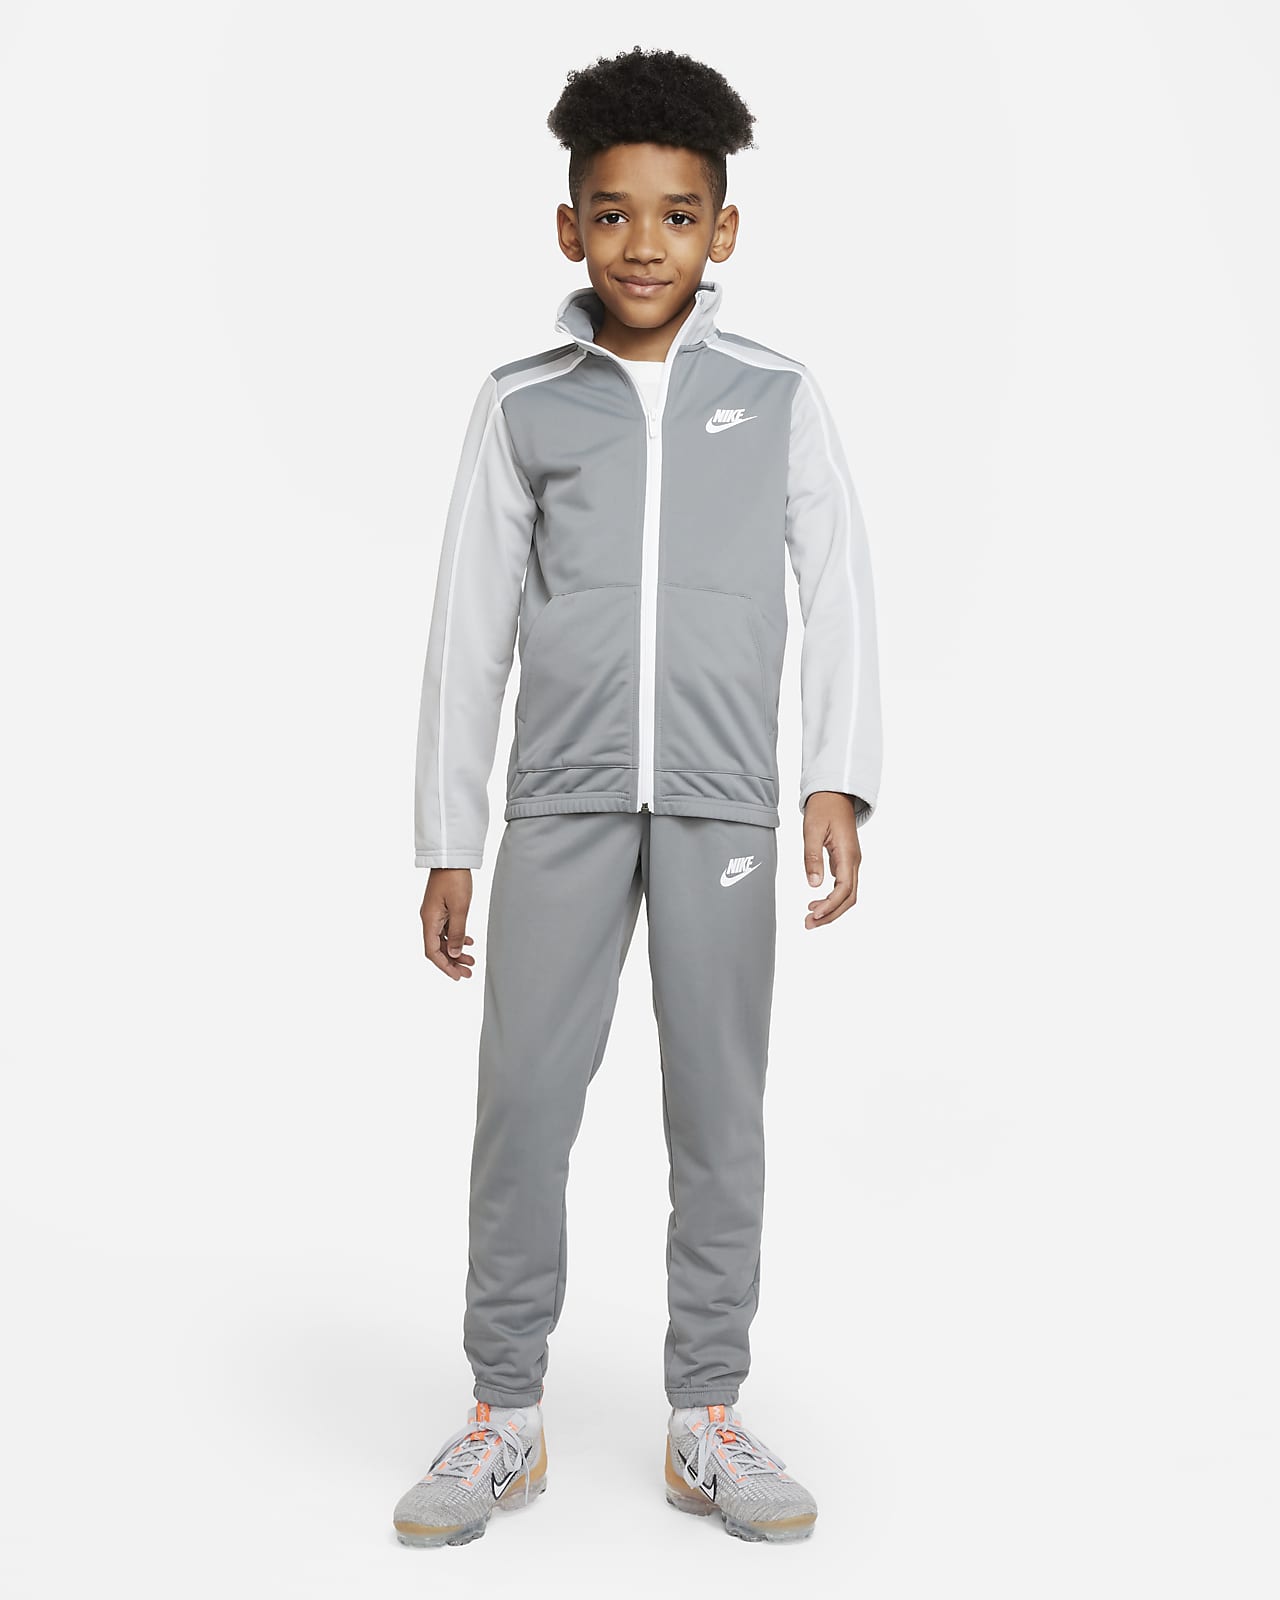  Survetement Nike Enfant